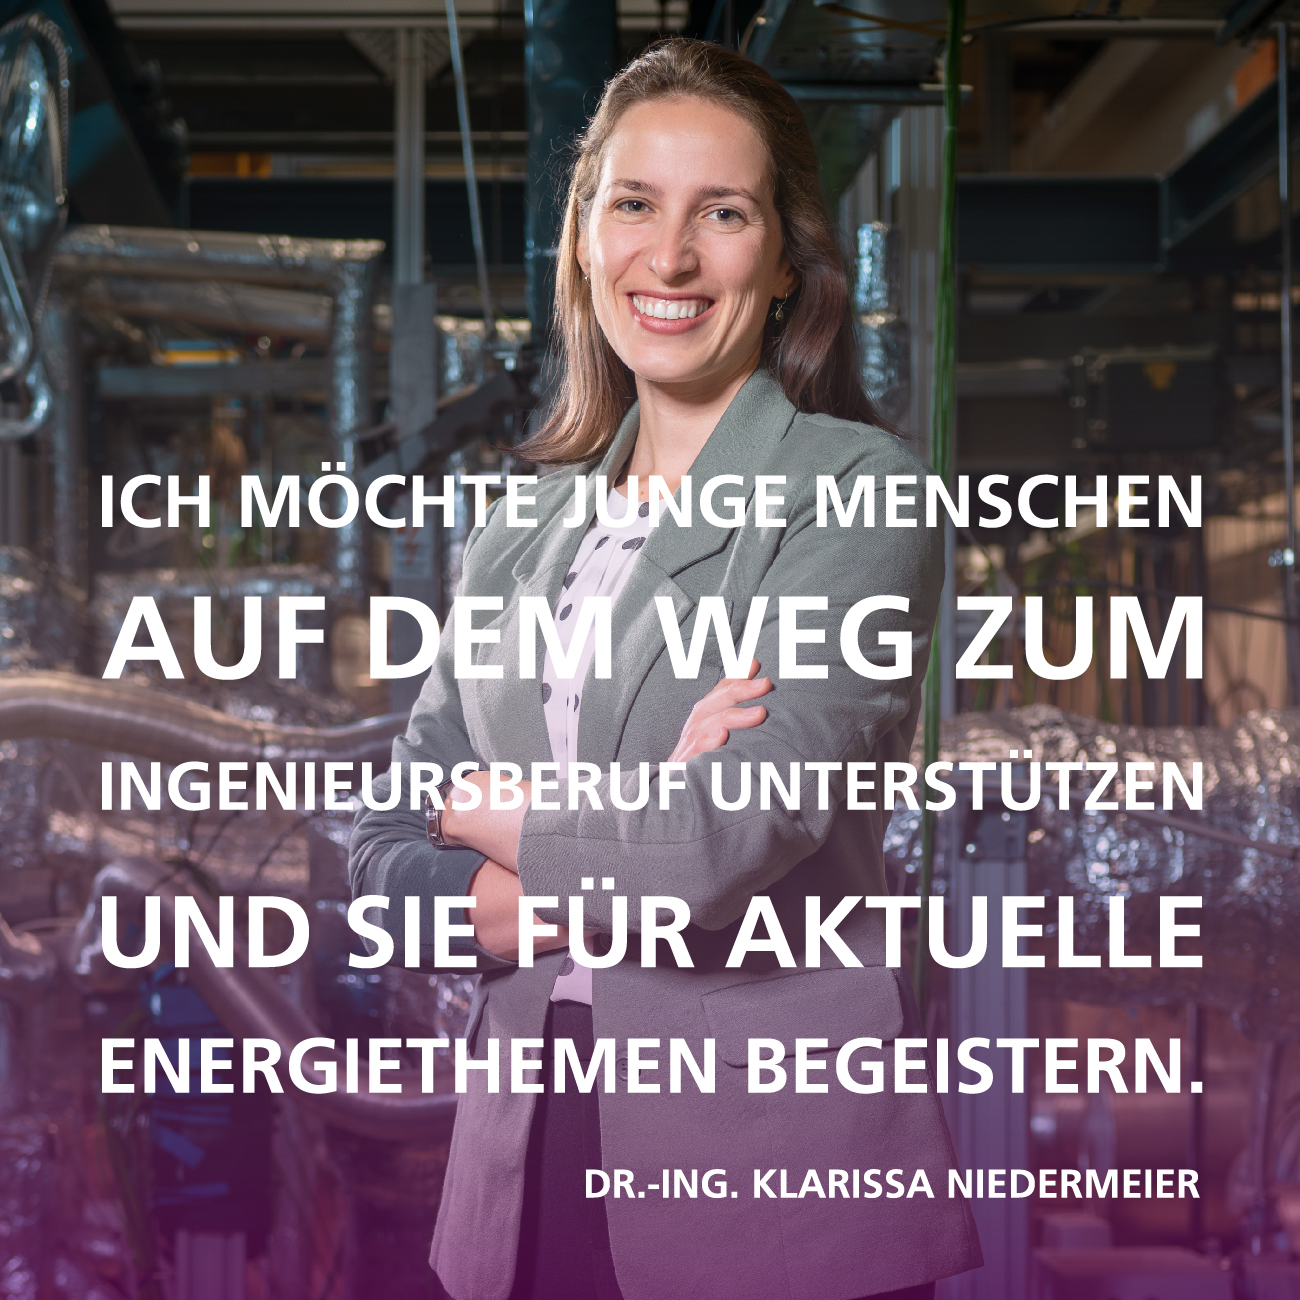 Ich möchte junge Menschen auf dem Weg zum Ingenieursberuf unterstützen und sie für aktuelle Energiethemen begeistern. Zitat von Dr.-Ing. Klarissa Niedermeier, Bereich 3, KIT | Copyright: KIT | B3 | M. Breig 